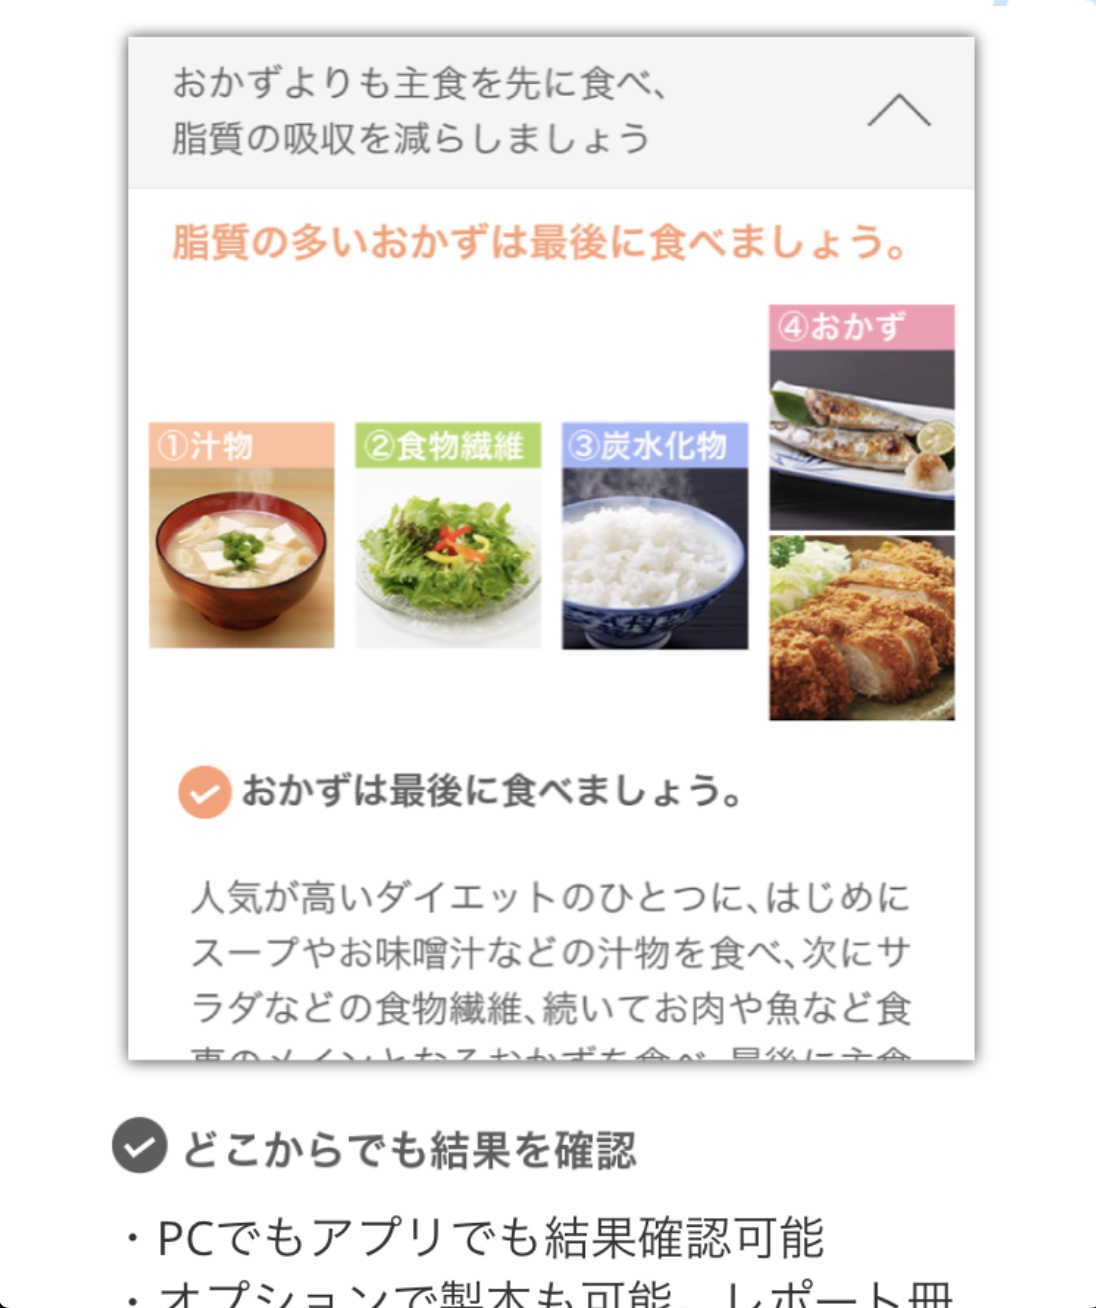 スマートフォンアプリの画面に表示される、さまざまな種類のお料理